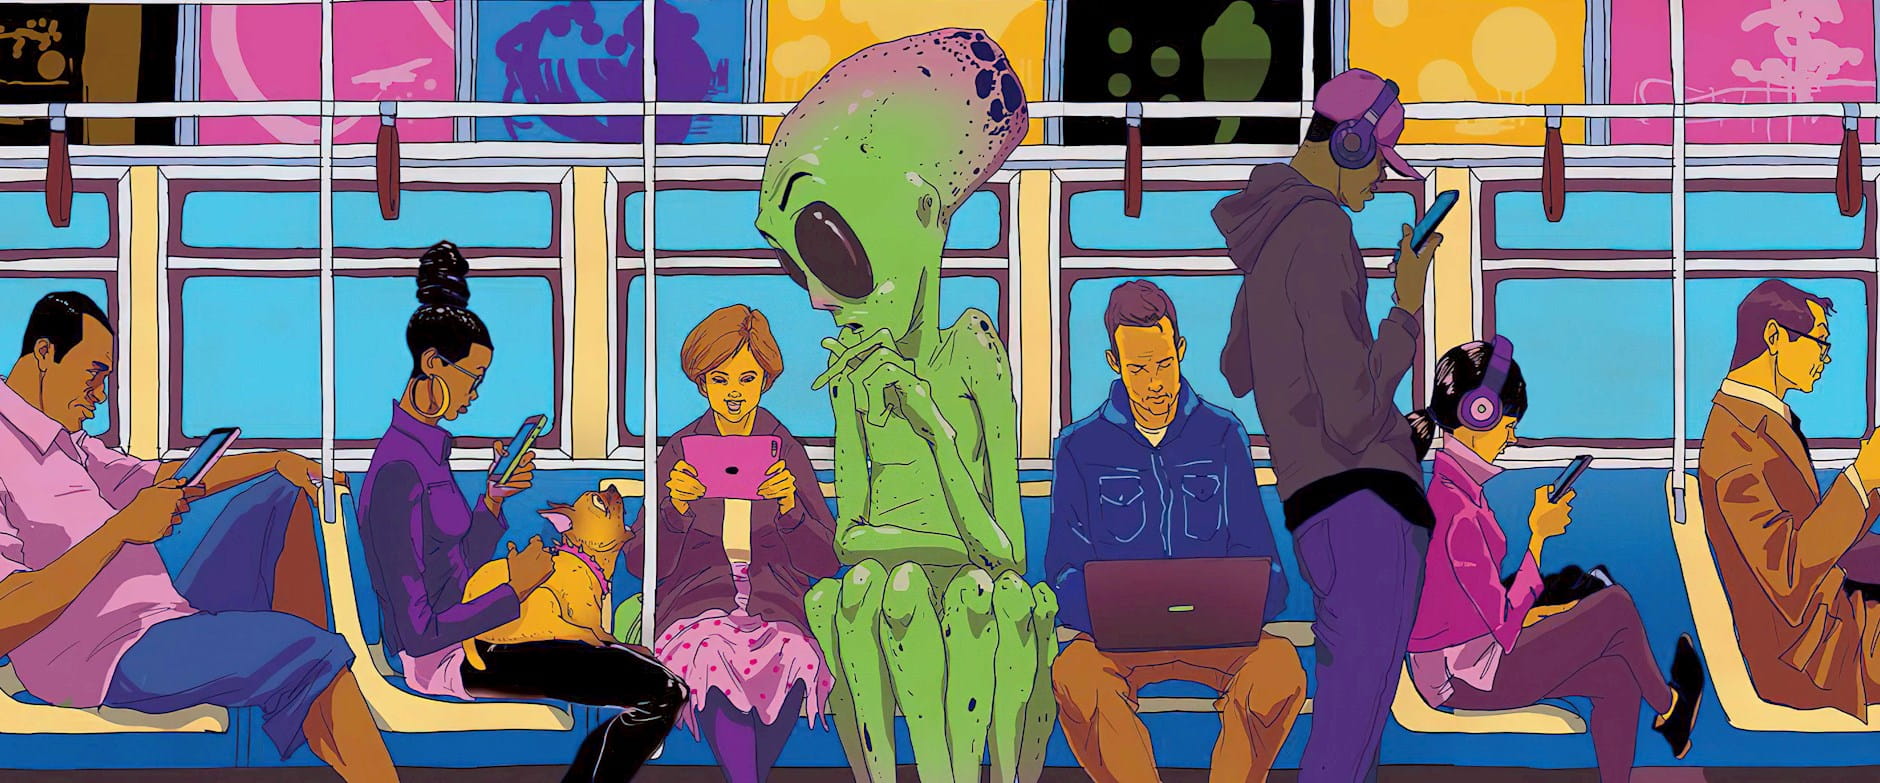 Alien on the subway